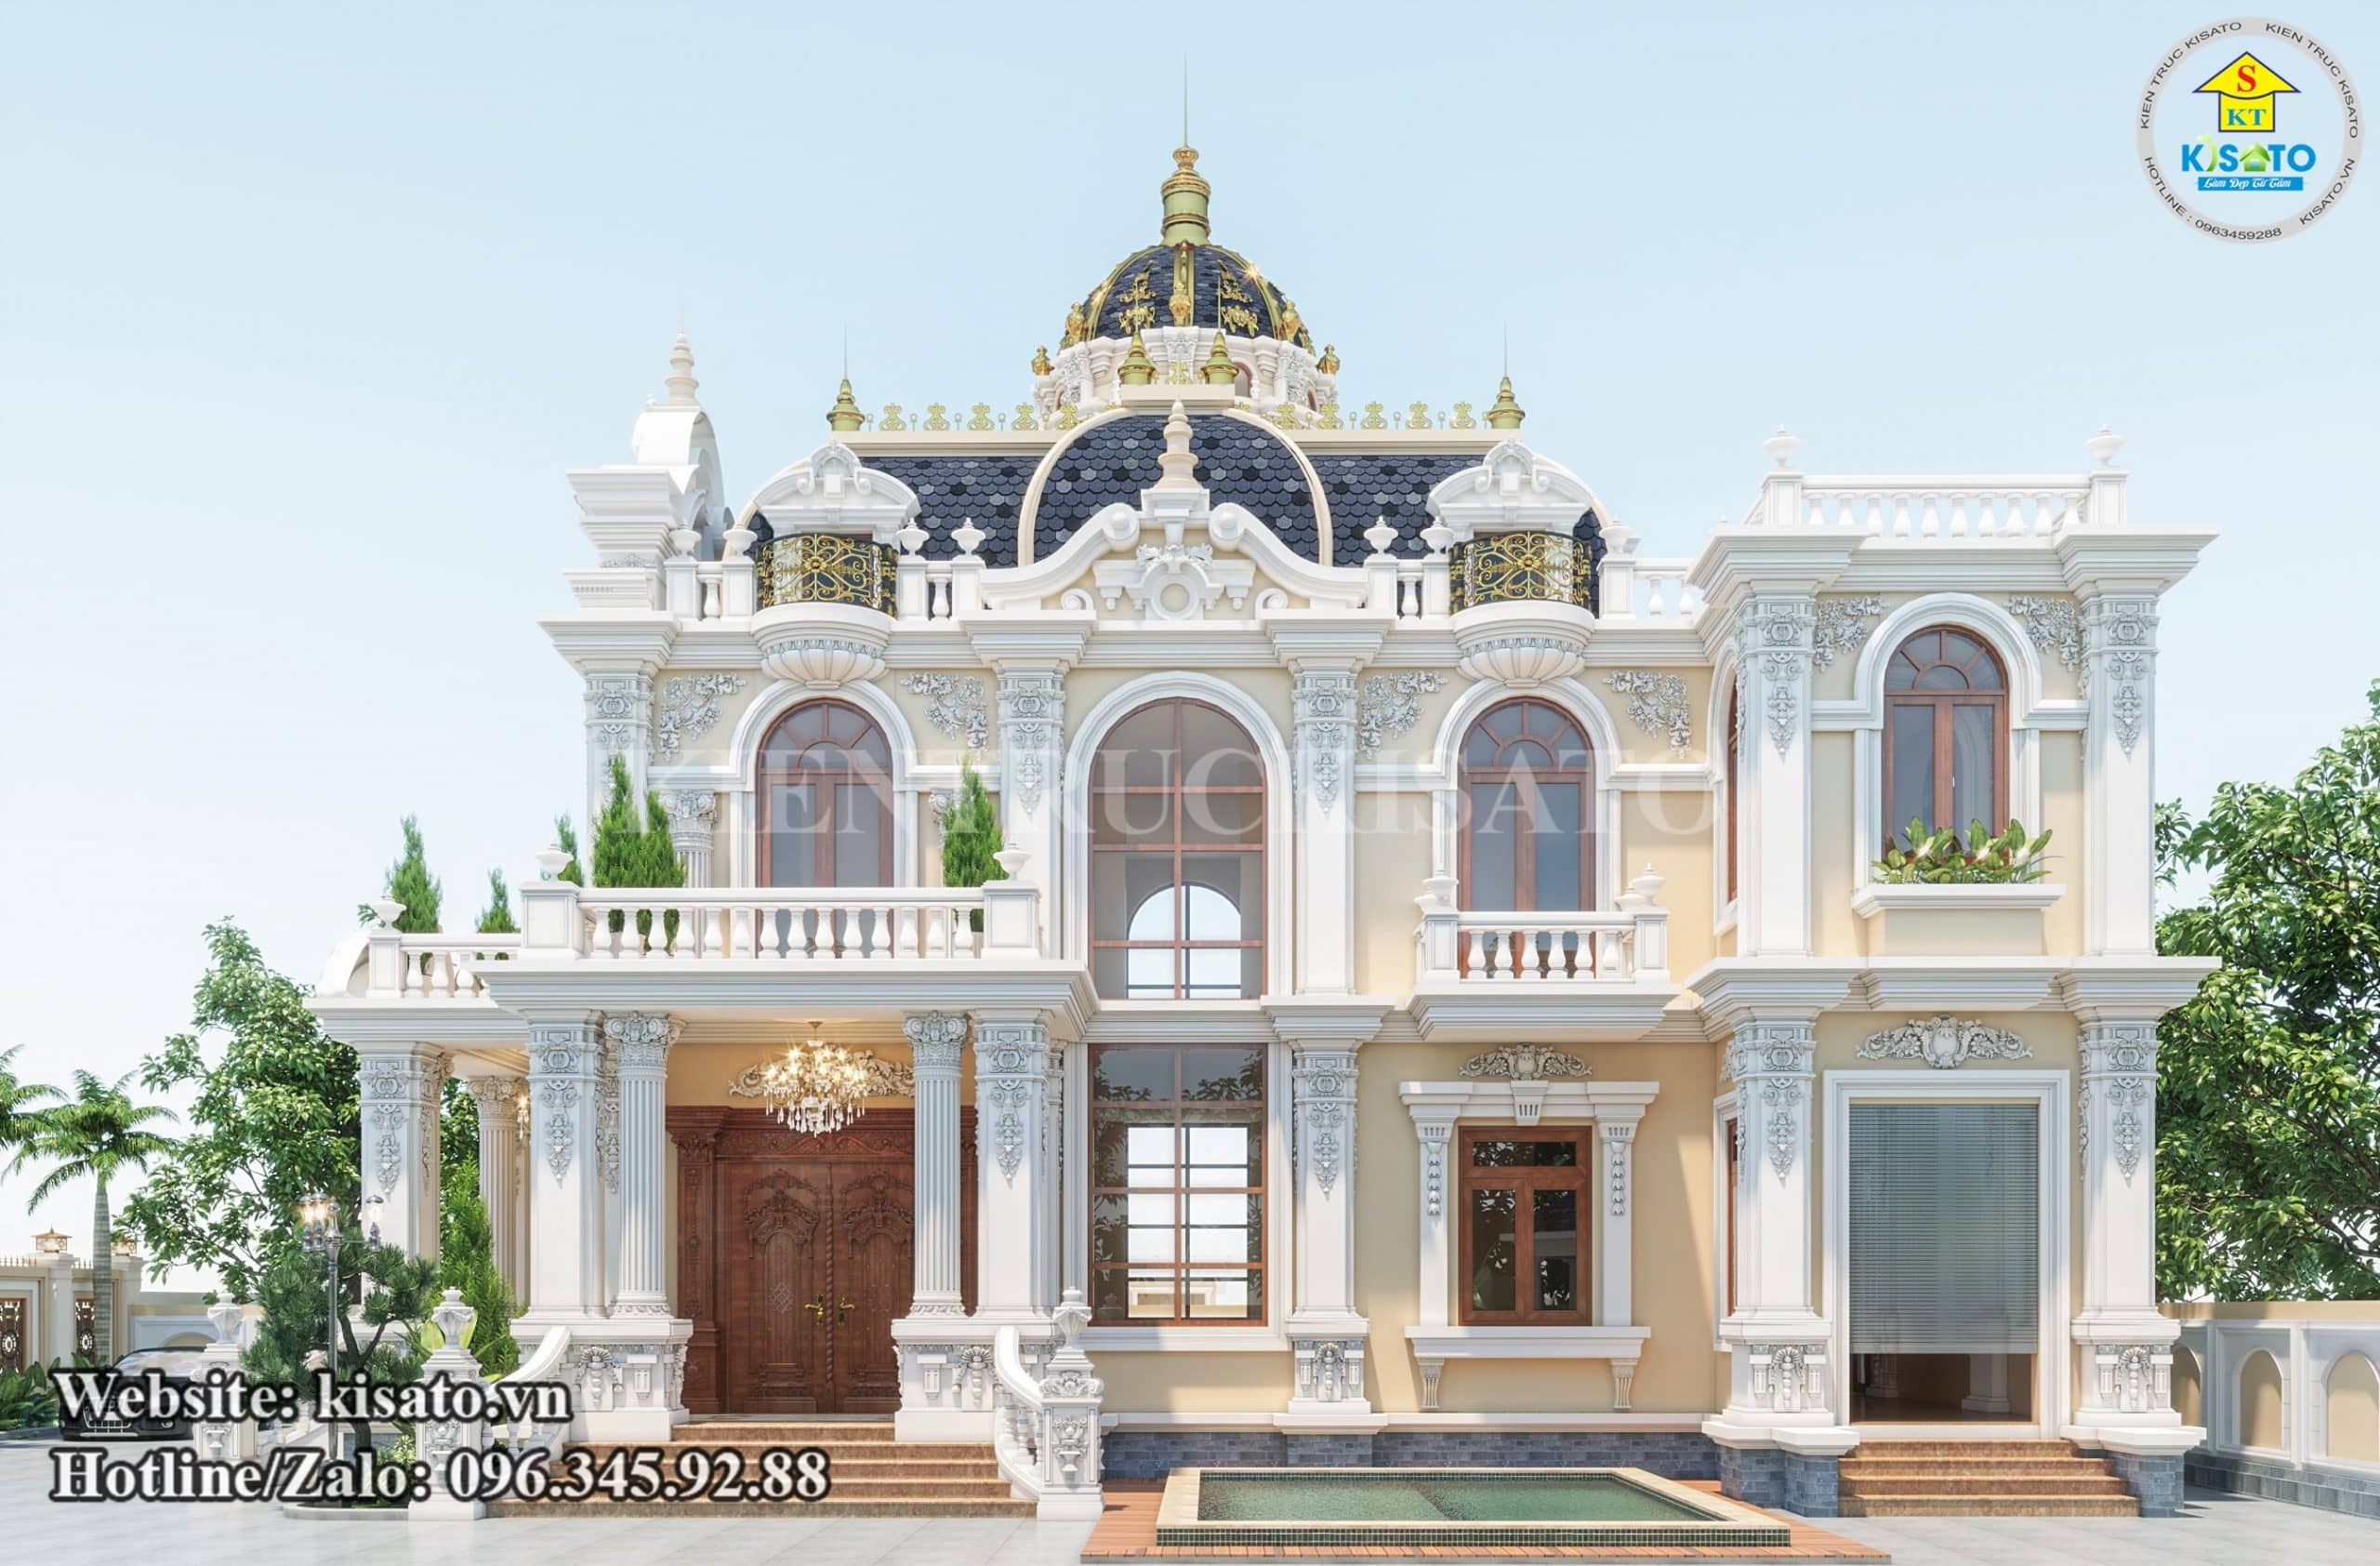 Mặt tiền chính của mẫu thiết kế biệt thự tân cổ điển đẹp 2 tầng kiểu Pháp tại Vũng Tàu